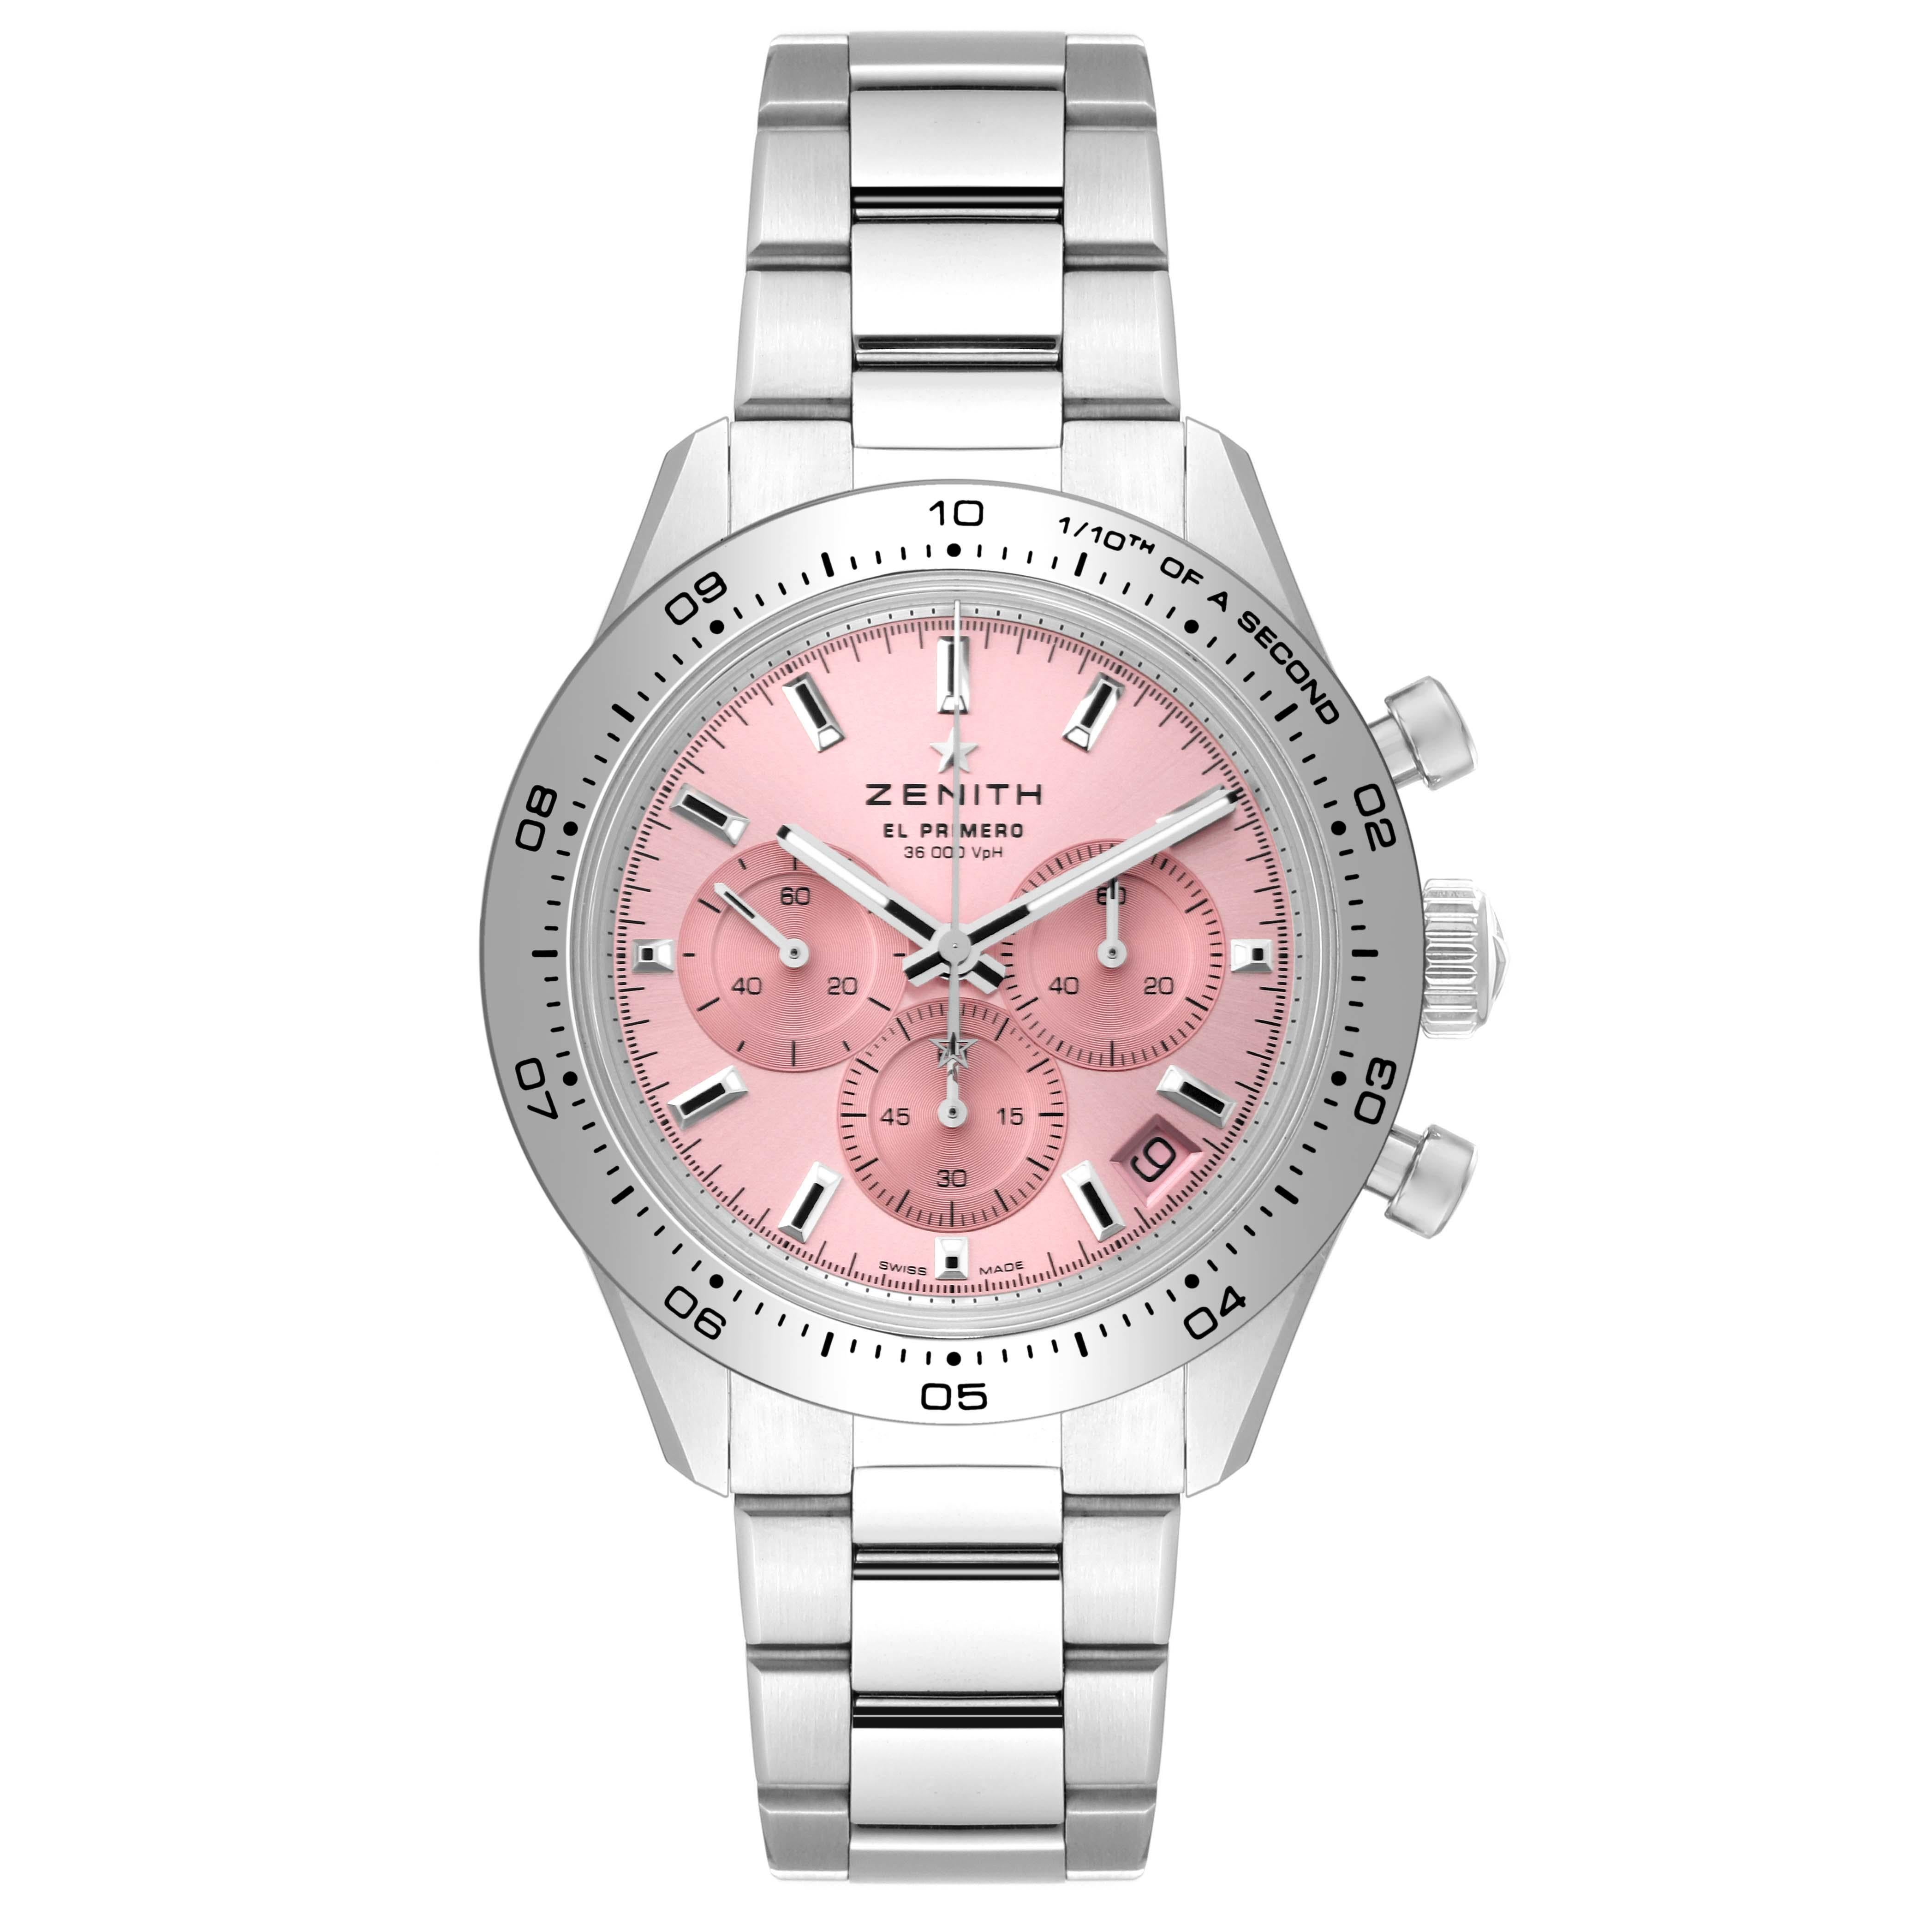 Zenith Chronomaster Sport Pink Limited Edition Steel Watch 03.3109.3600 Unworn 4